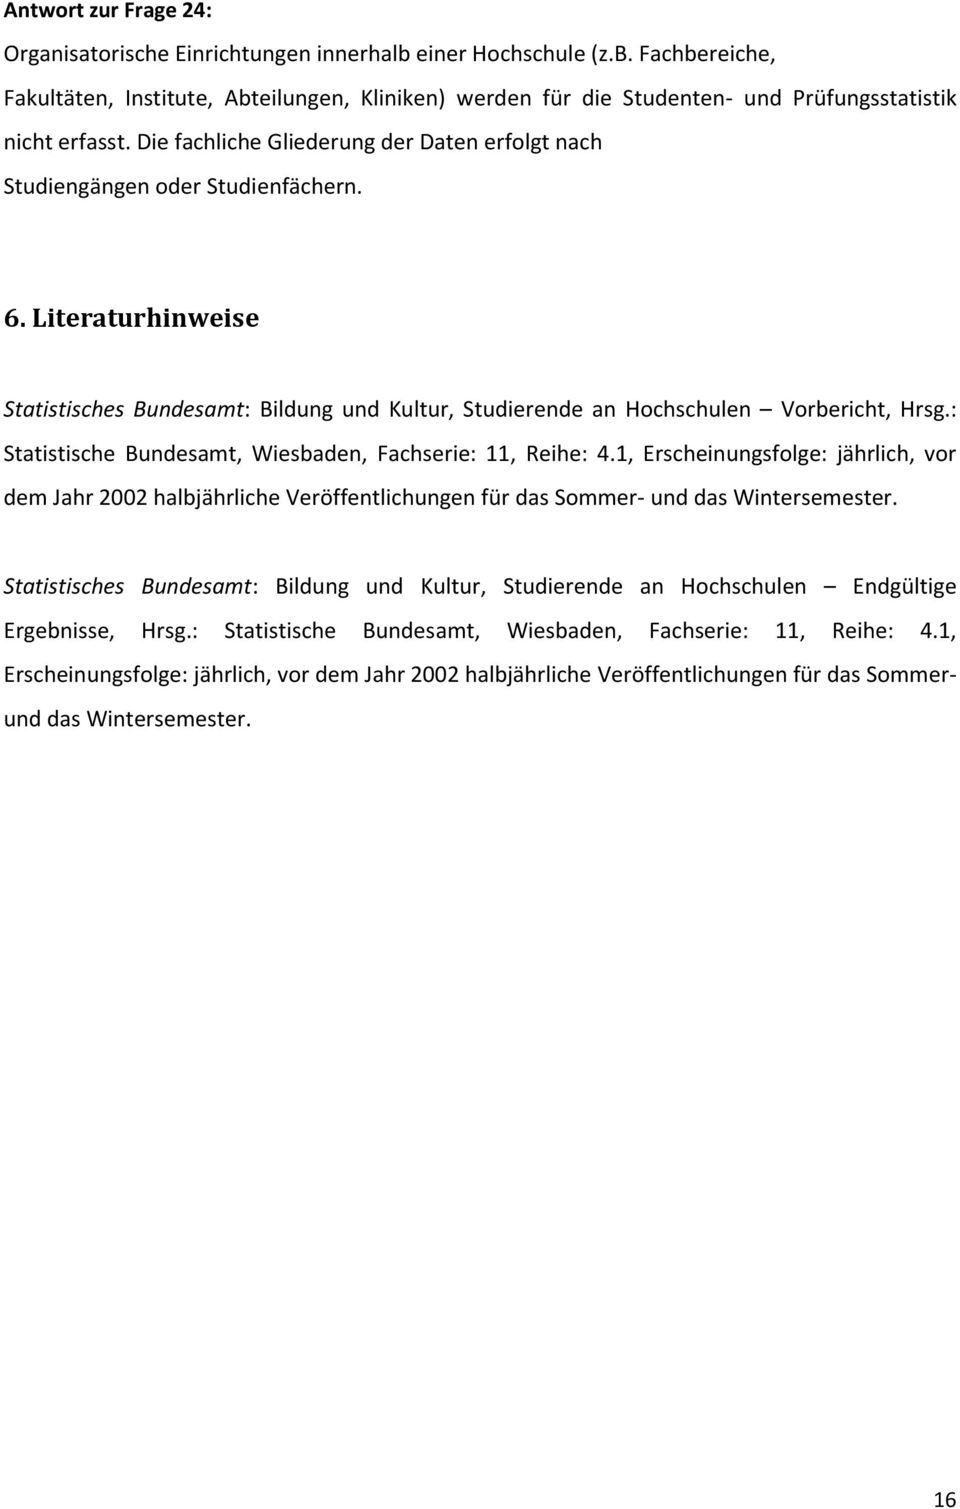 : Statistische Bundesamt, Wiesbaden, Fachserie: 11, Reihe: 4.1, Erscheinungsfolge: jährlich, vor dem Jahr 2002 halbjährliche Veröffentlichungen für das Sommer- und das Wintersemester.